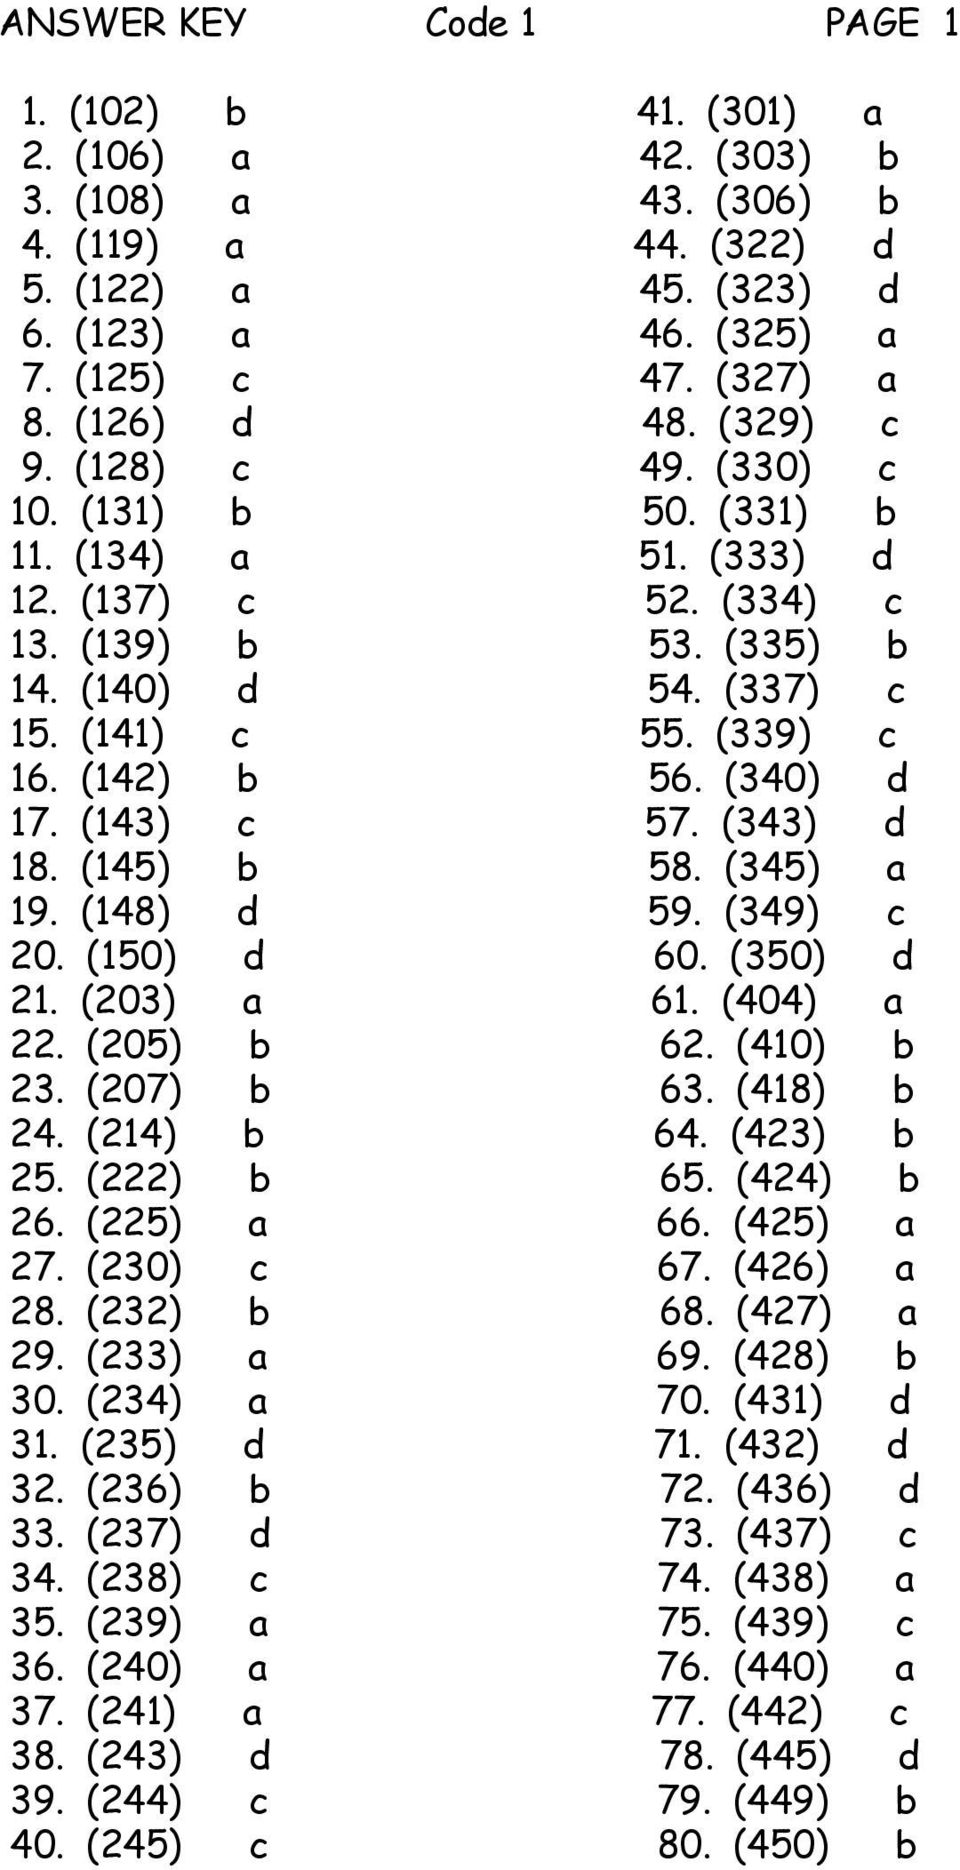 (340) d 17. (143) c 57. (343) d 18. (145) b 58. (345) a 19. (148) d 59. (349) c 20. (150) d 60. (350) d 21. (203) a 61. (404) a 22. (205) b 62. (410) b 23. (207) b 63. (418) b 24. (214) b 64.